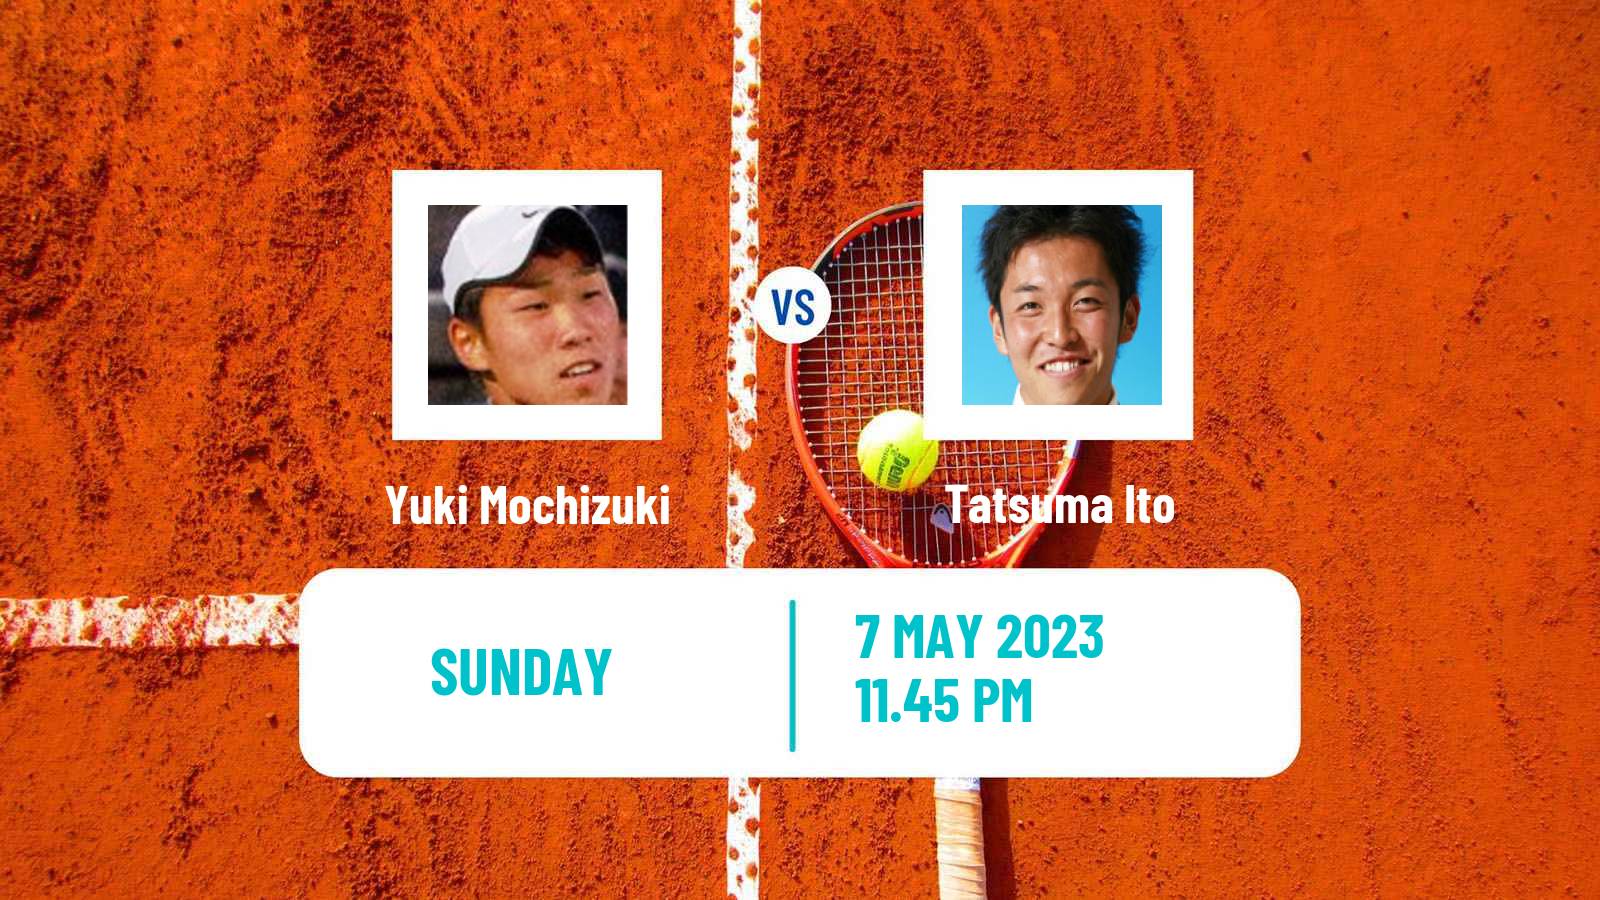 Tennis ATP Challenger Yuki Mochizuki - Tatsuma Ito